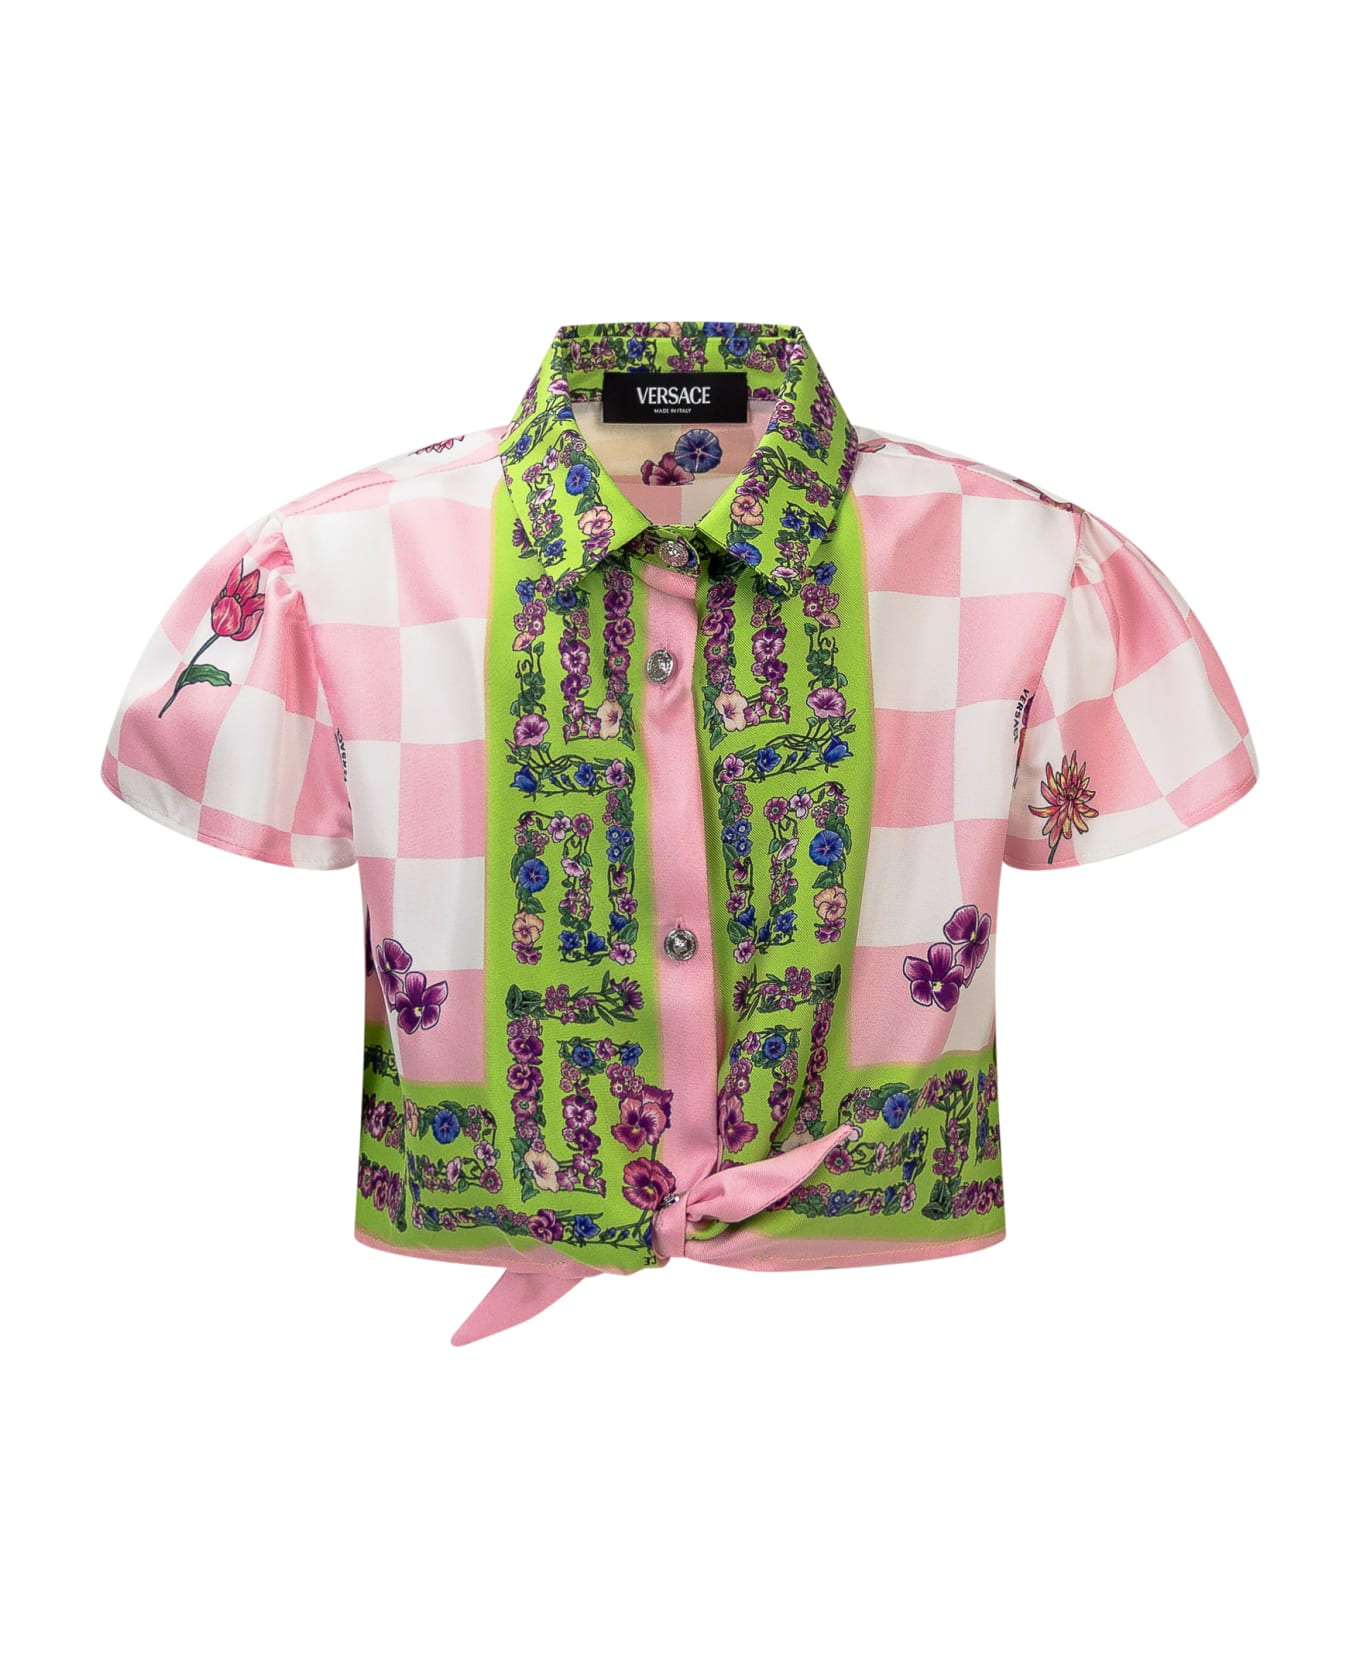 Versace Blossom Shirt - Multicolore シャツ